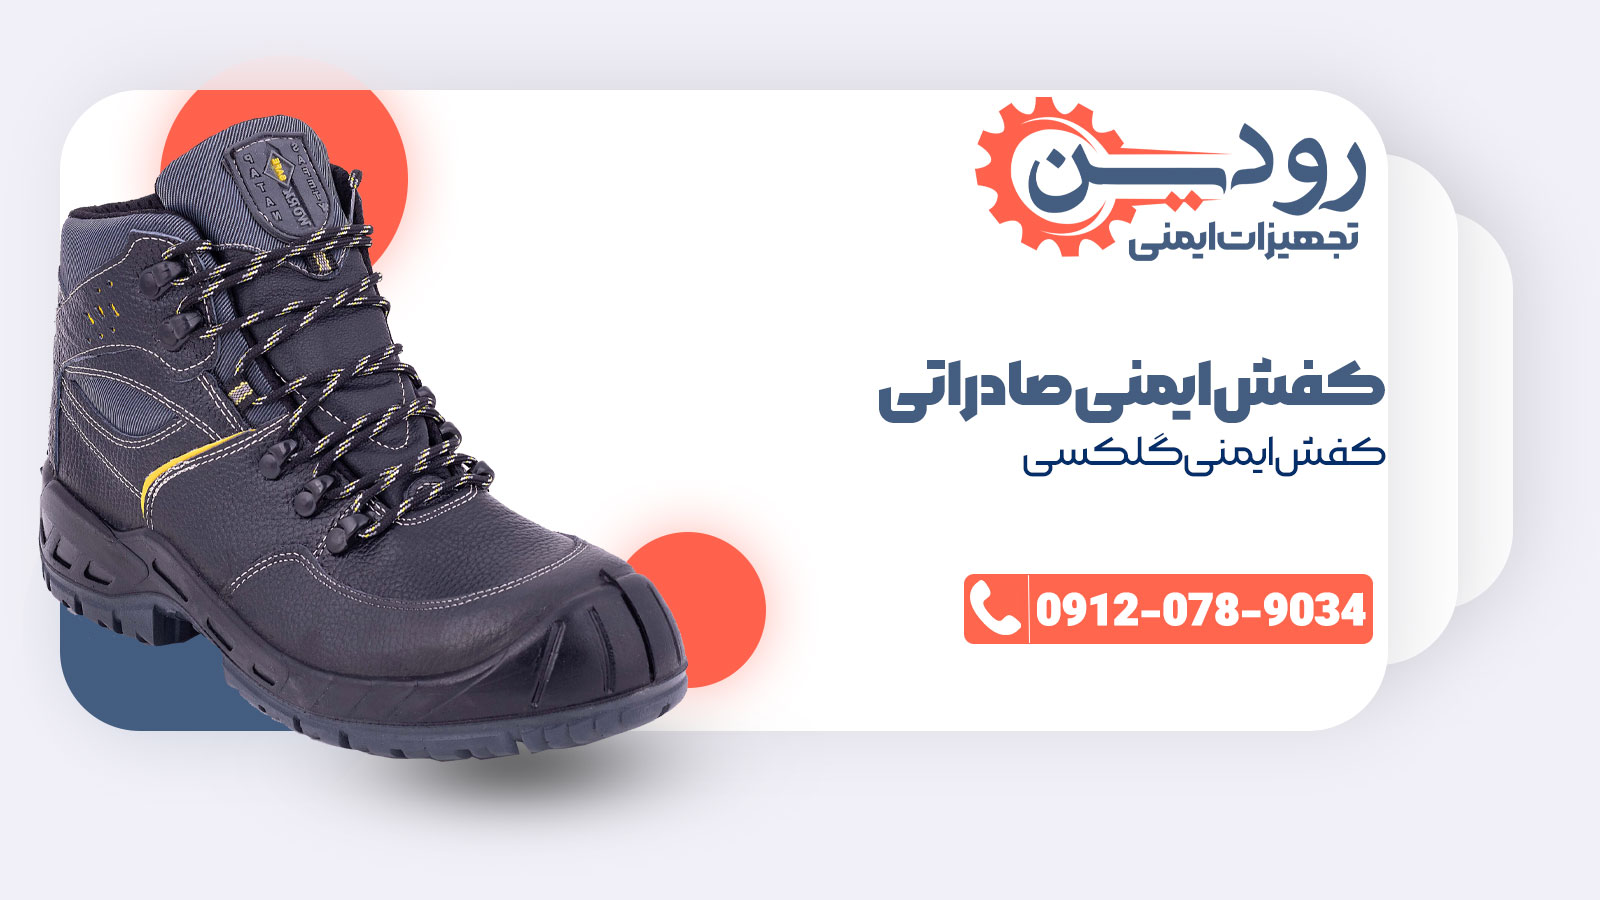 مرکز فروش کفش ایمنی صادراتی تامین کننده بسیار قوی در حوزه تجهیزات ایمنی است.